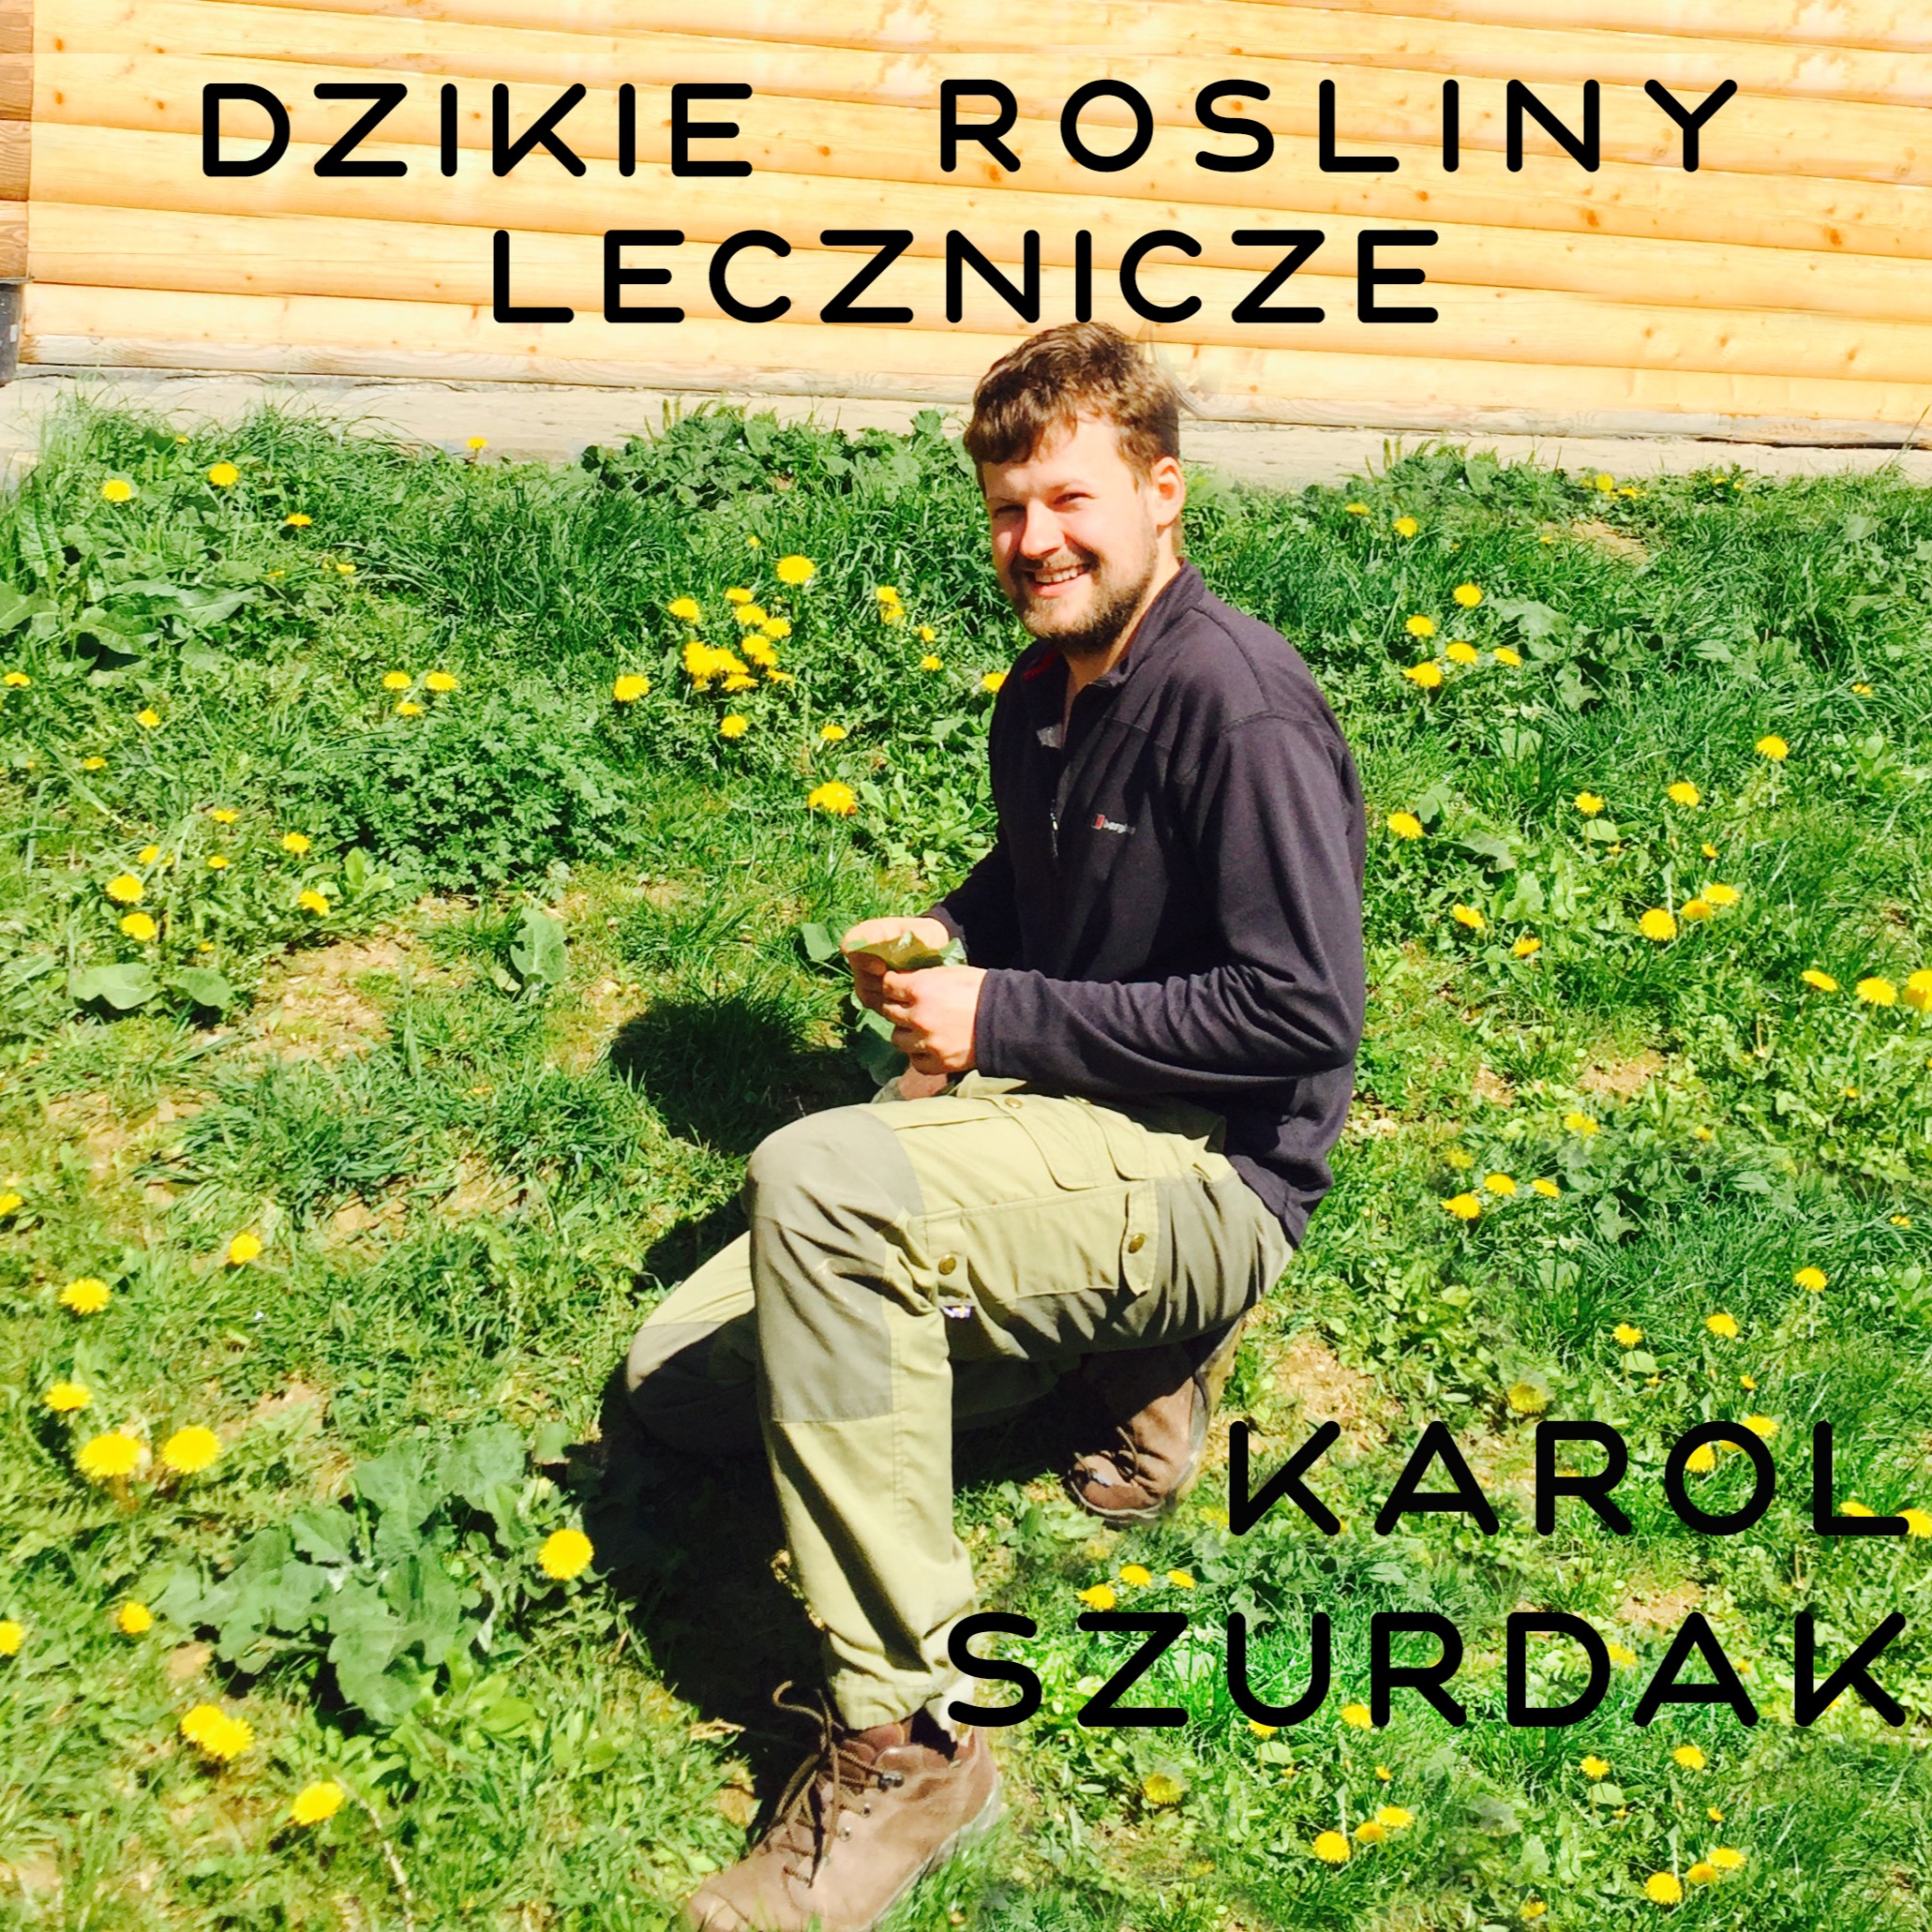 Dzikie Rośliny Lecznicze - rozmowa z etnobotanikiem Karolem Szurdakiem